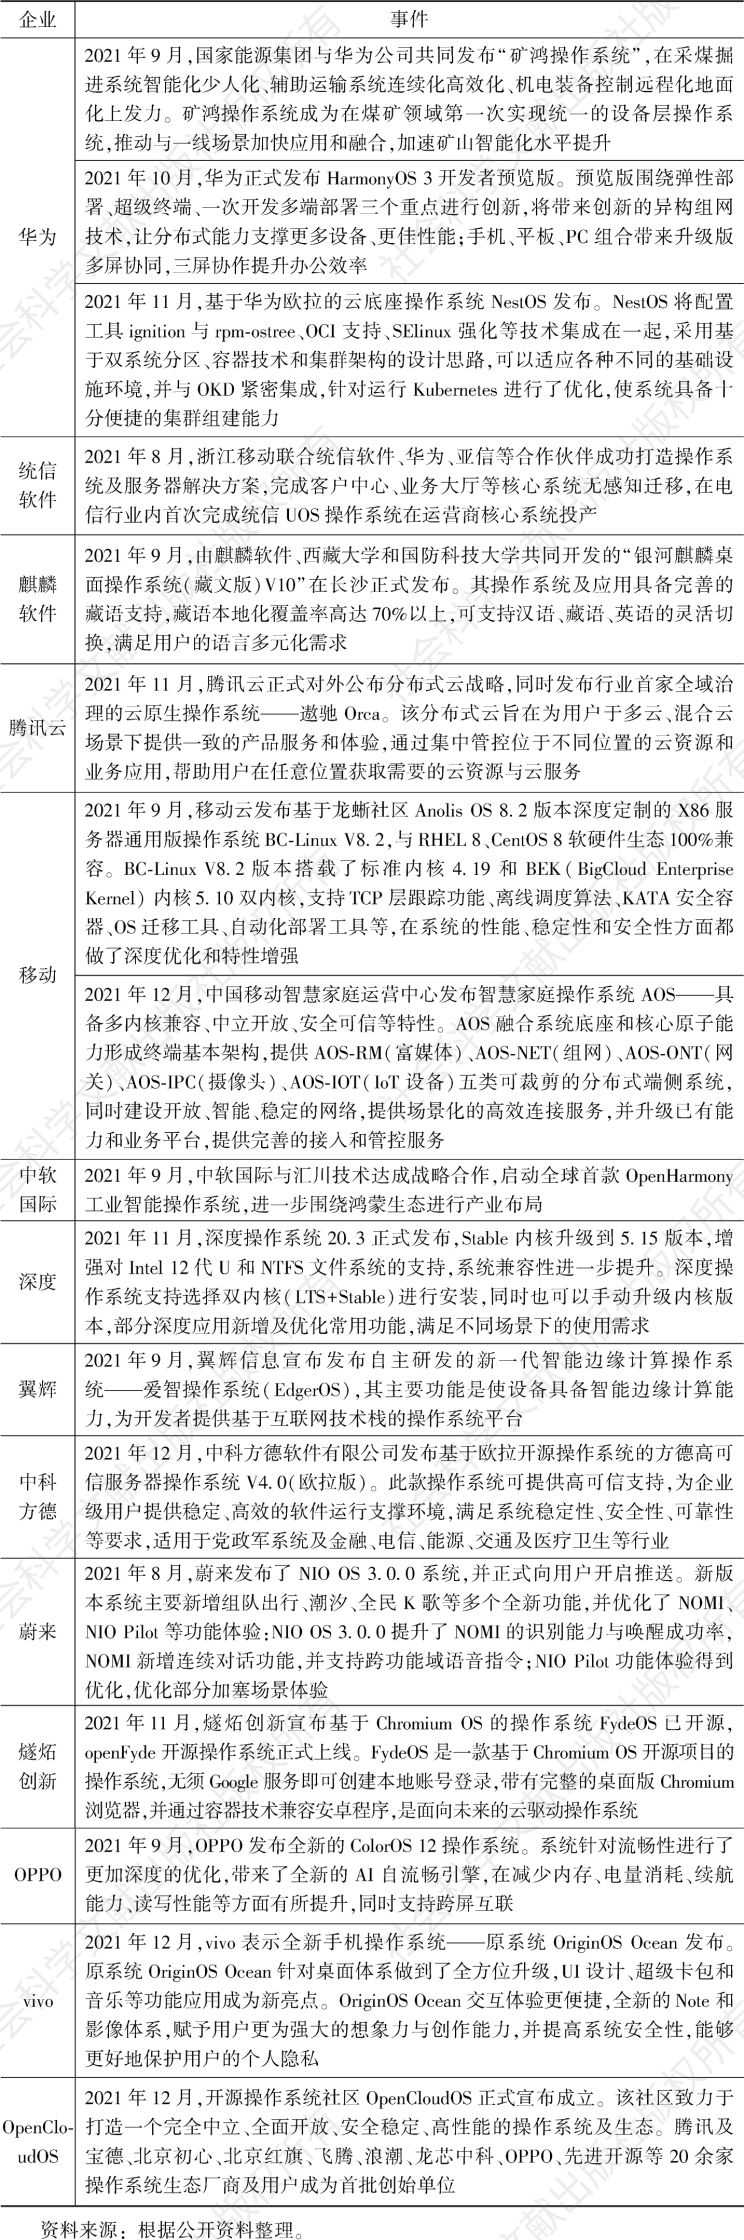 表4 中国操作系统产品发展情况